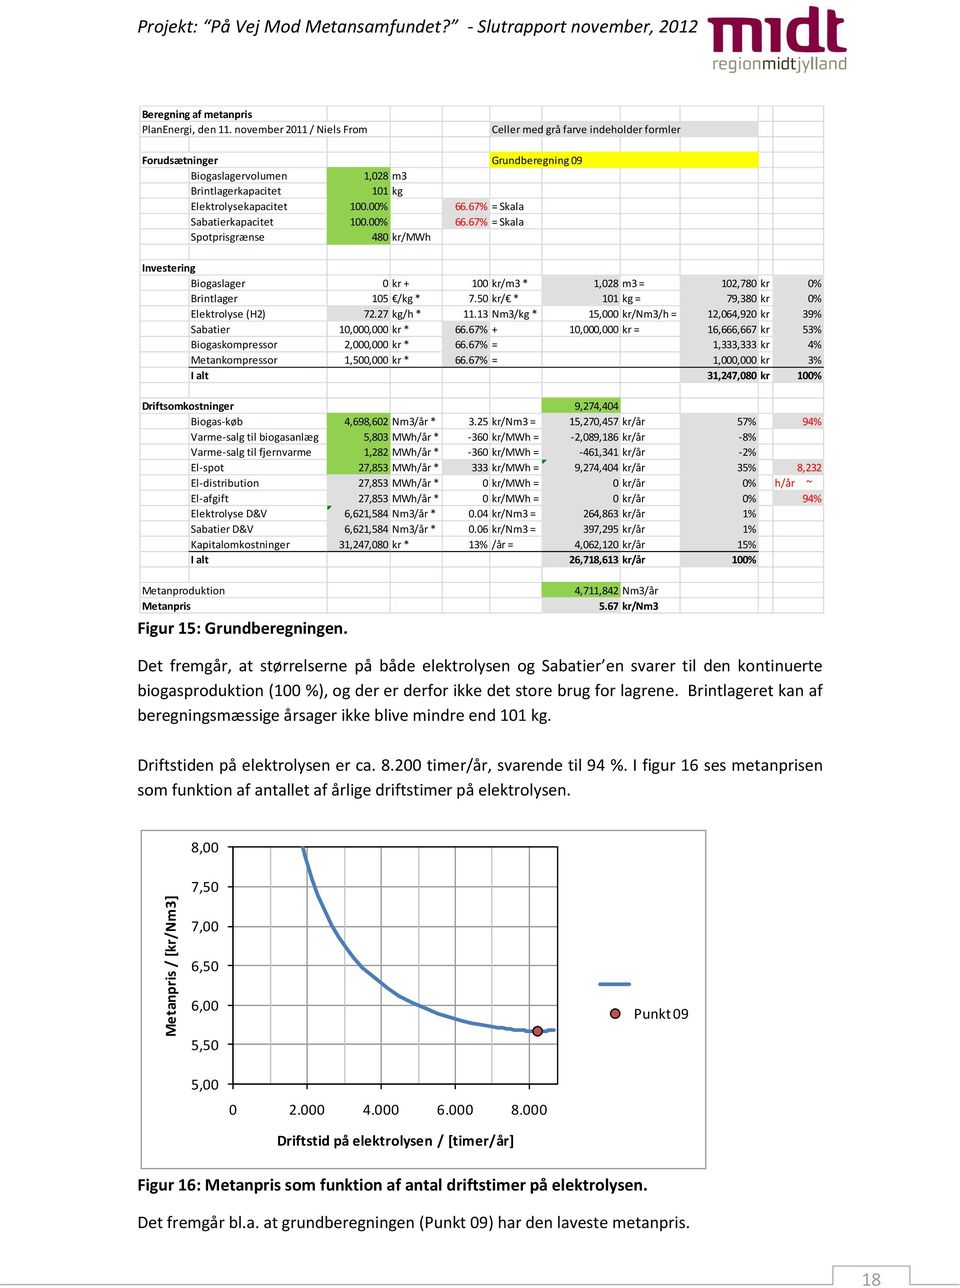 67% = Skala Sabatierkapacitet 100.00% 66.67% = Skala Spotprisgrænse 480 kr/mwh Investering Biogaslager 0 kr + 100 kr/m3 * 1,028 m3 = 102,780 kr 0% Brintlager 105 /kg * 7.